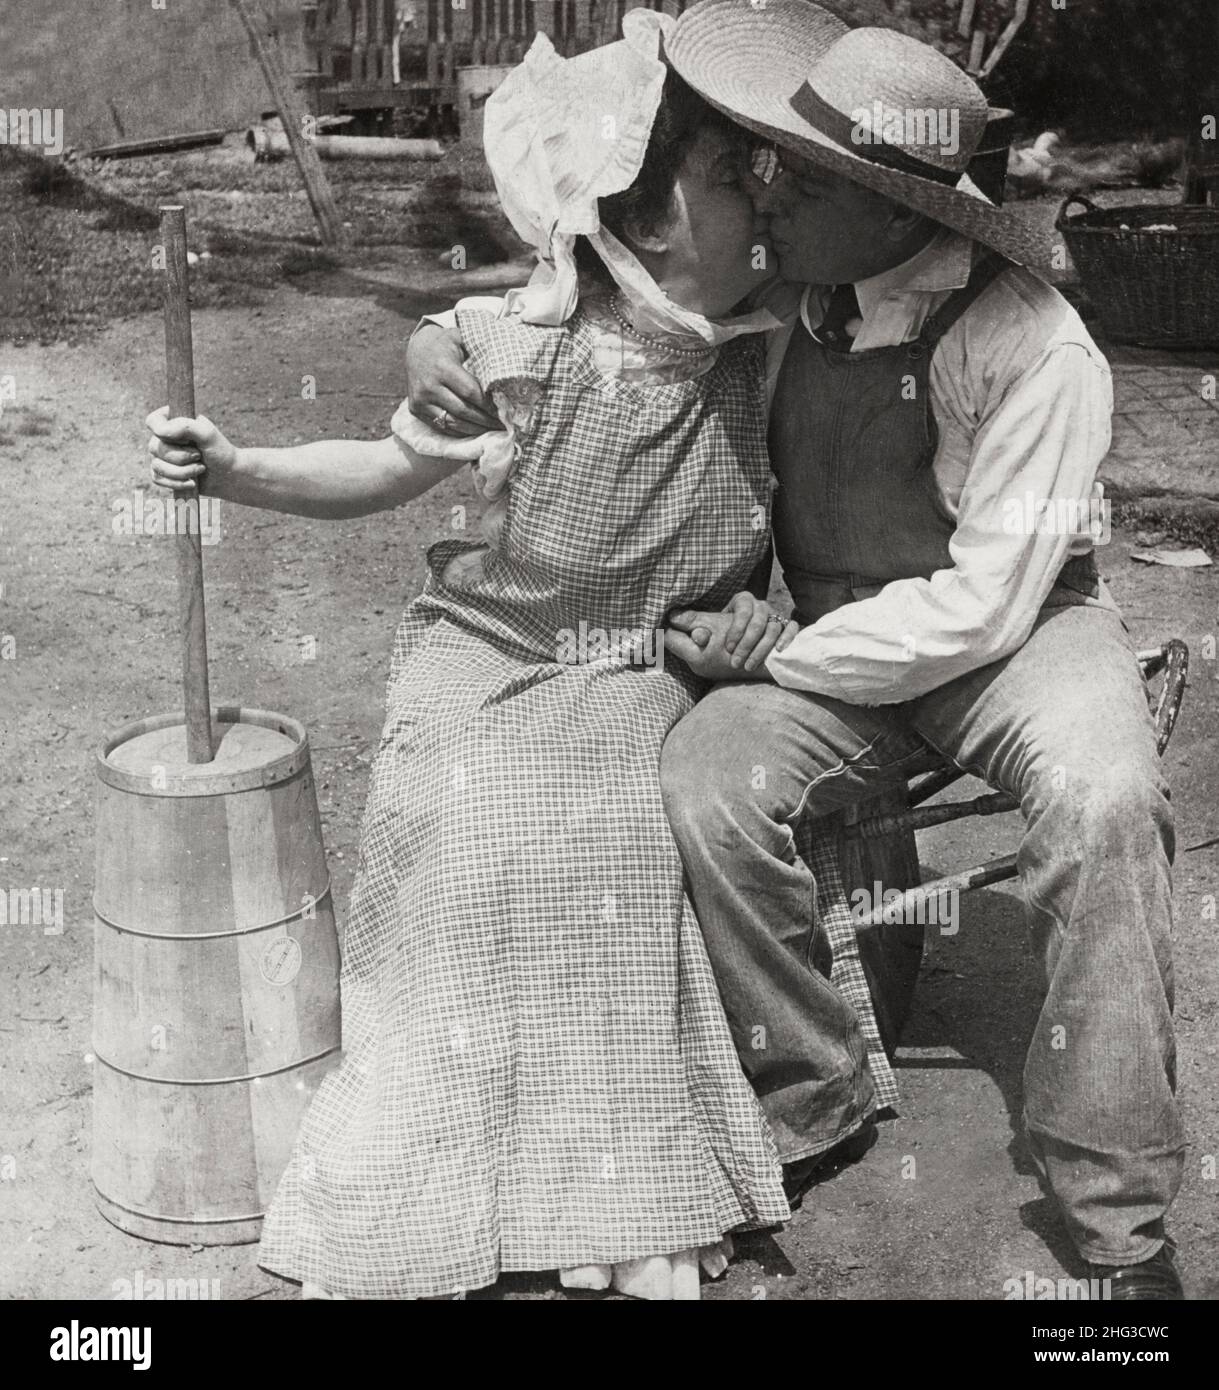 Vintage-Foto der Liebe. Chinnieren, nicht churnen. 1906 Küssen der Bauer und der Milchfrau; Frau mit Butterfass. Stockfoto